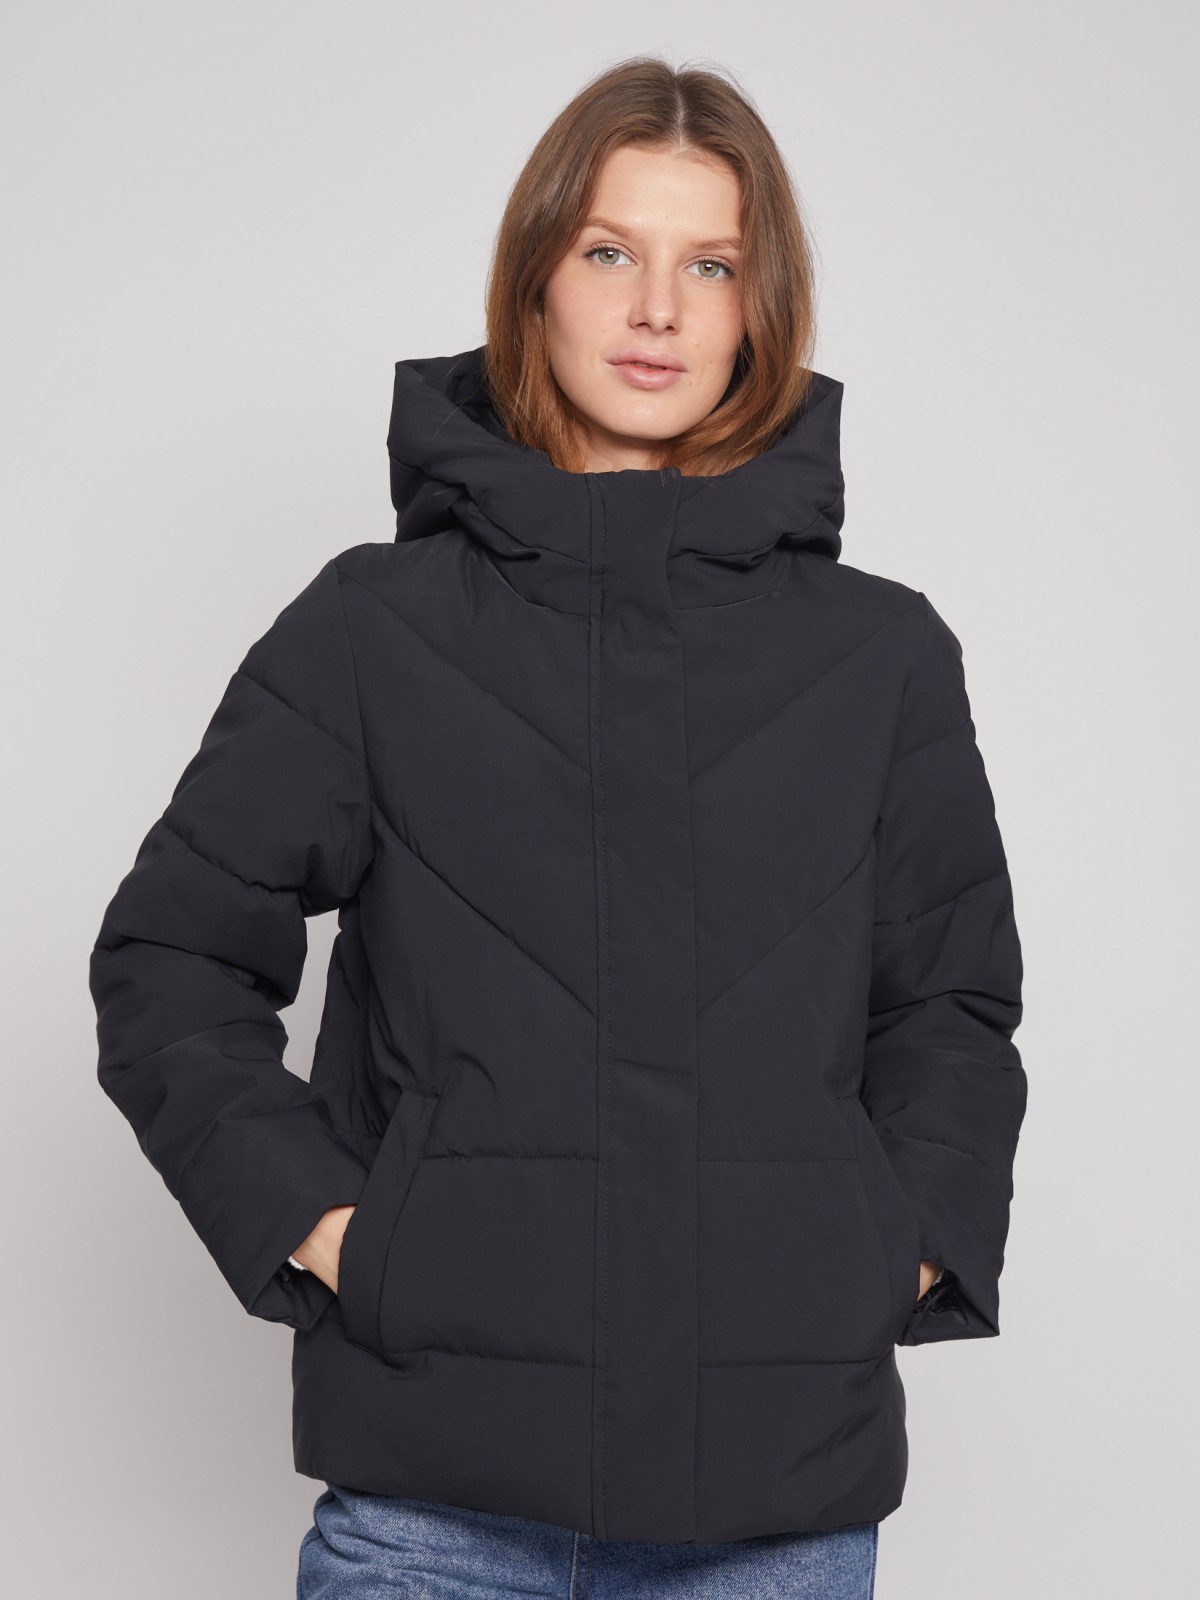 Тёплая куртка с капюшоном zolla 022335102134, цвет черный, размер XS - фото 4